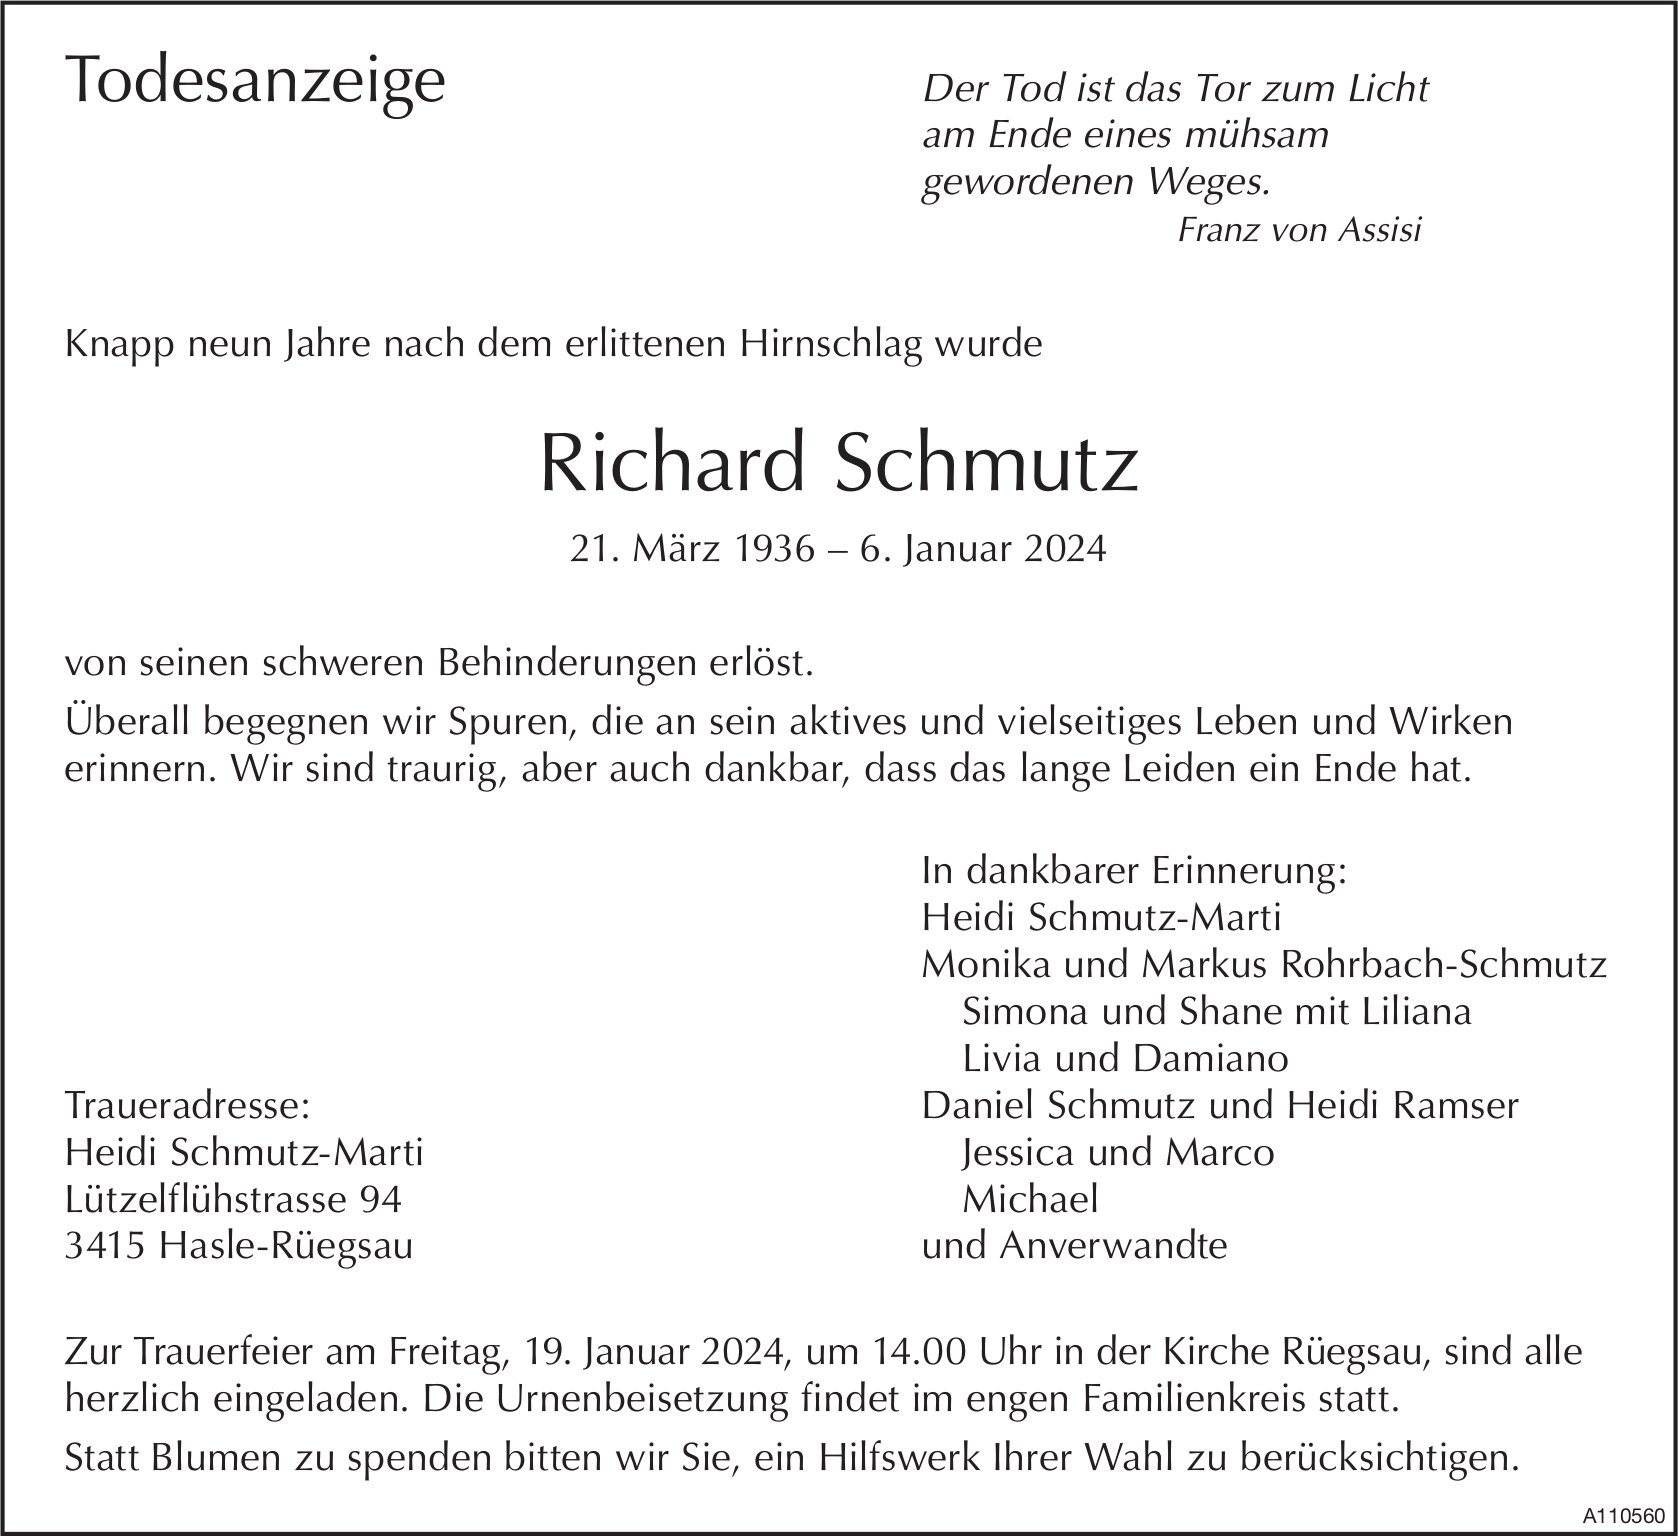 Richard Schmutz, Januar 2024 / TA